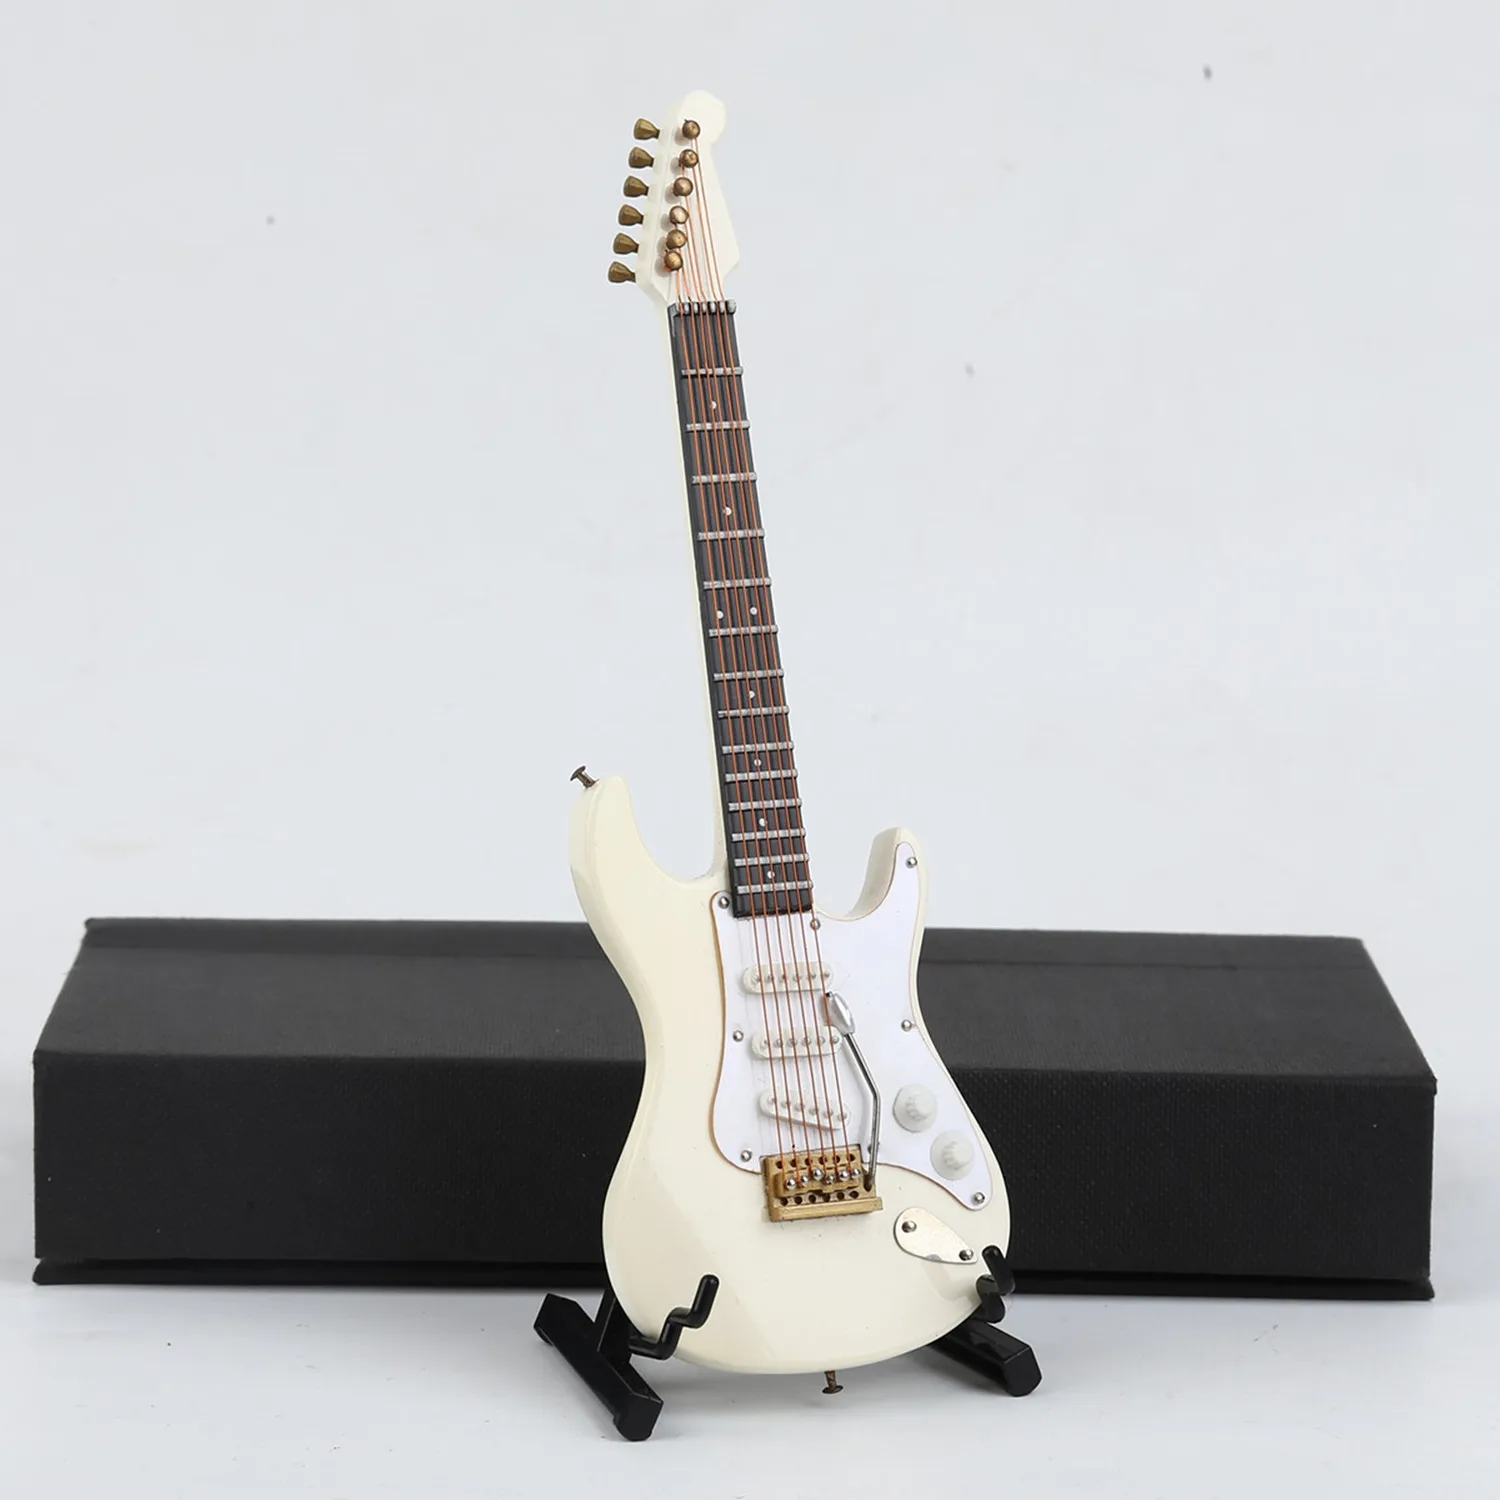 bleu marine Apolo Guitare basse électrique Dollhouse Mini instrument modèle miniature projets d'art sac guitare électrique basse loisirs cadeaux 